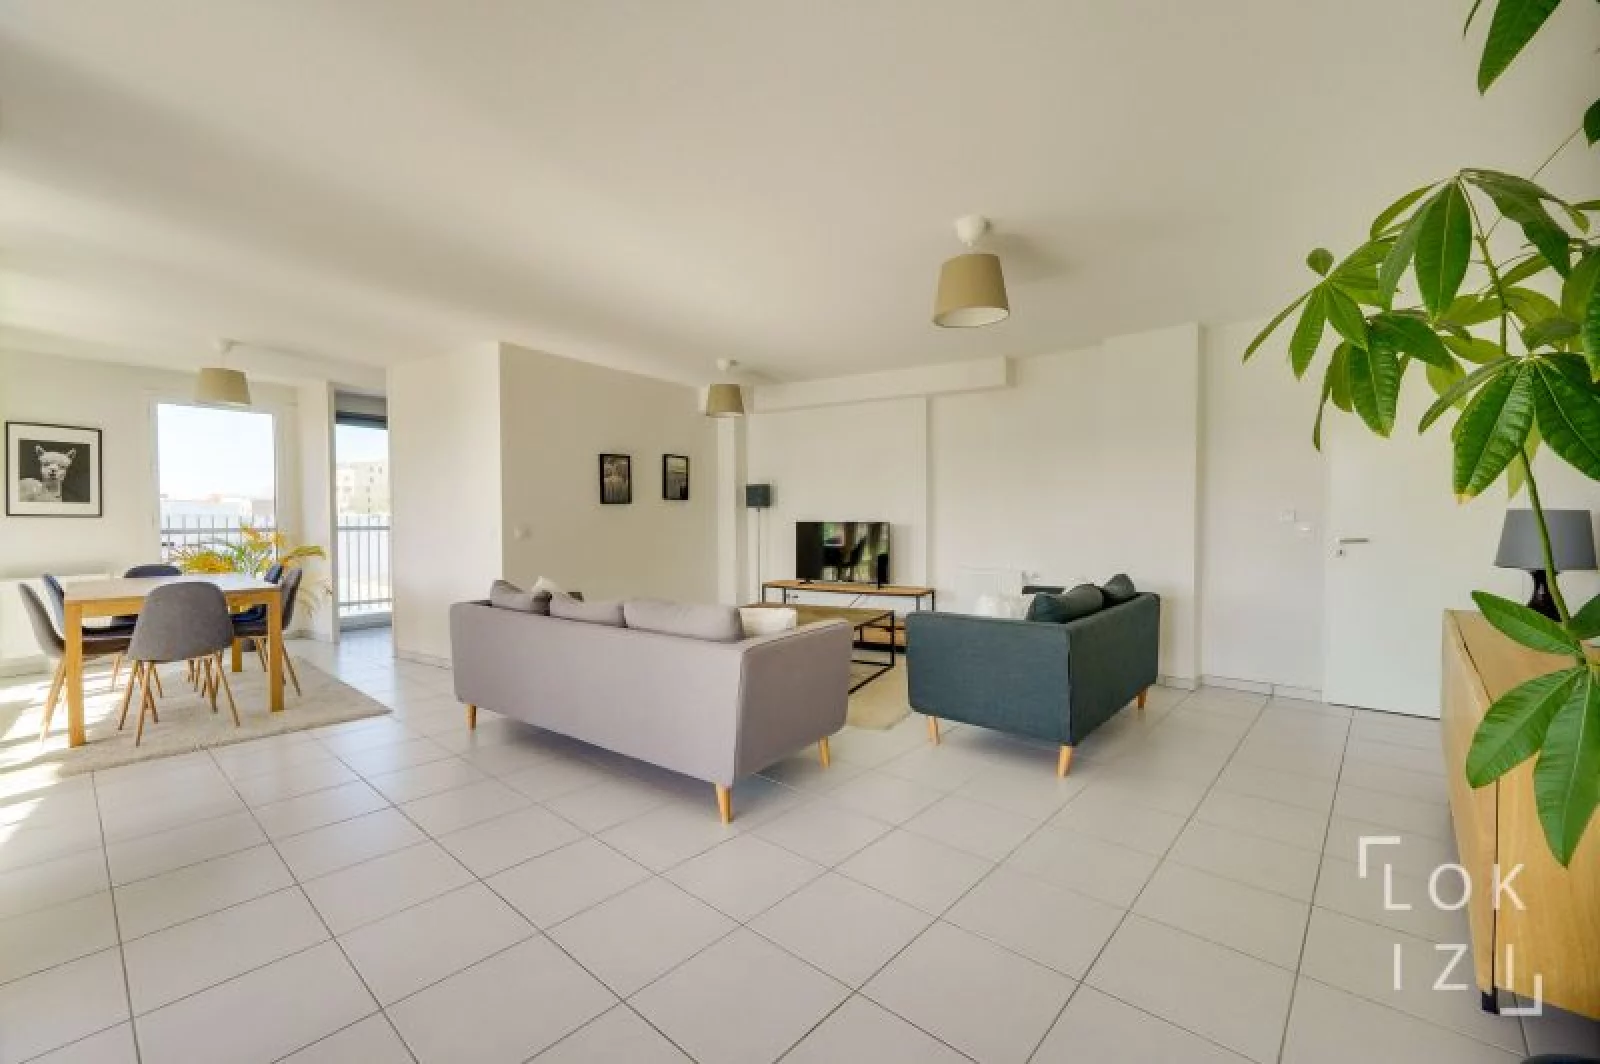 Vente appartement meublé 4 pièces 102m² (Bordeaux - Bassins à flot)